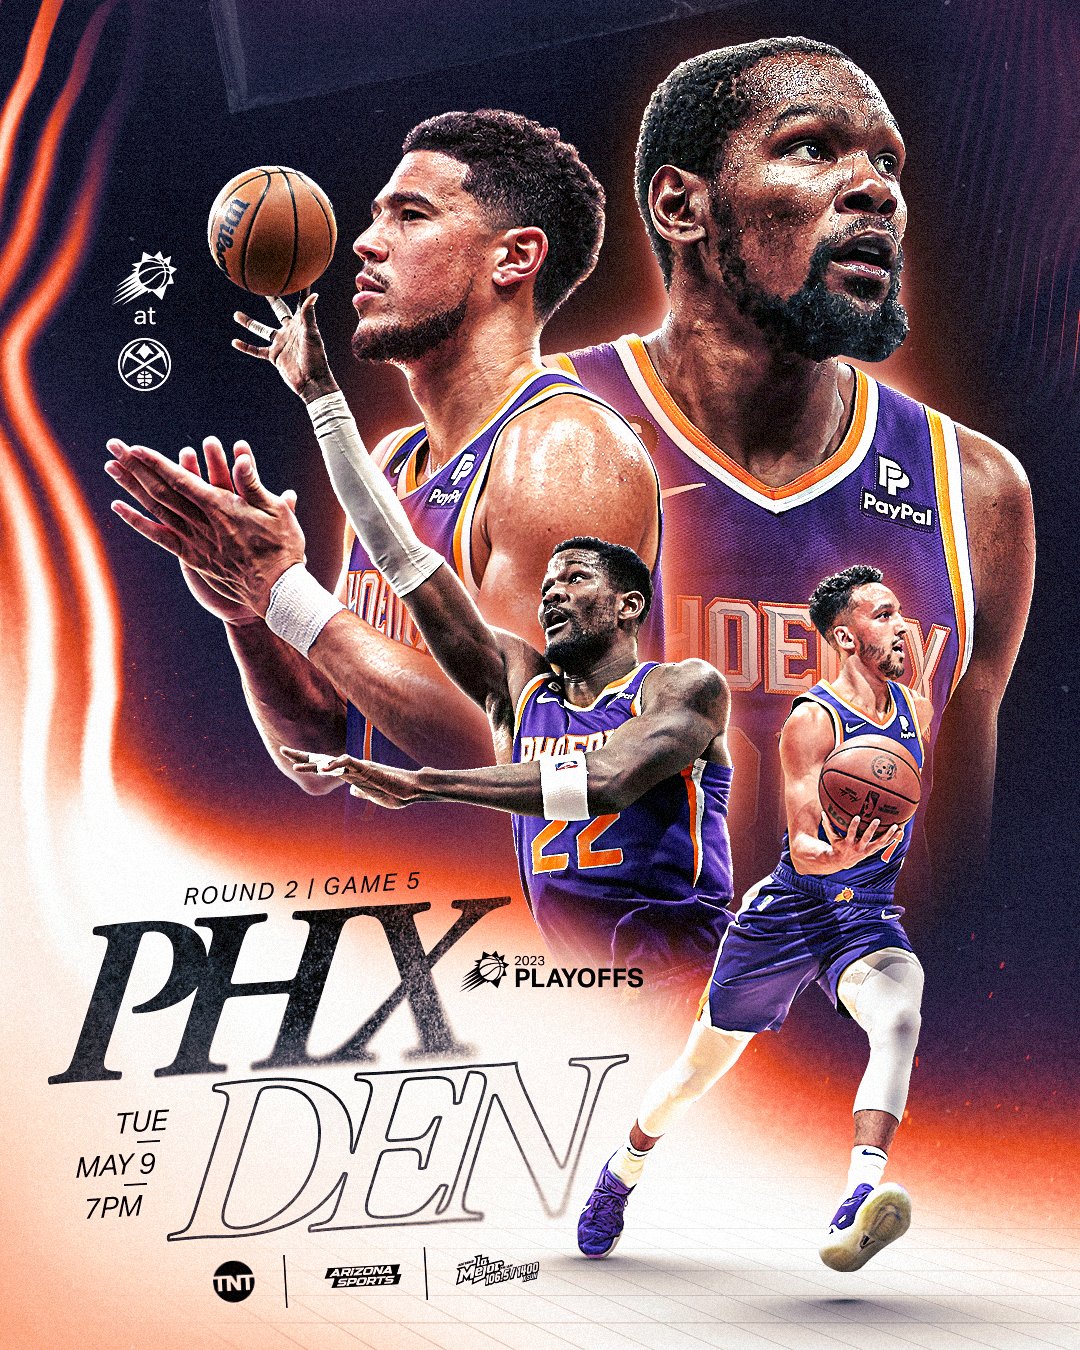 Phoenix Suns on X: 𝐍𝐁𝐀 𝐅𝐈𝐍𝐀𝐋𝐒. 𝐆𝐀𝐌𝐄 𝟓